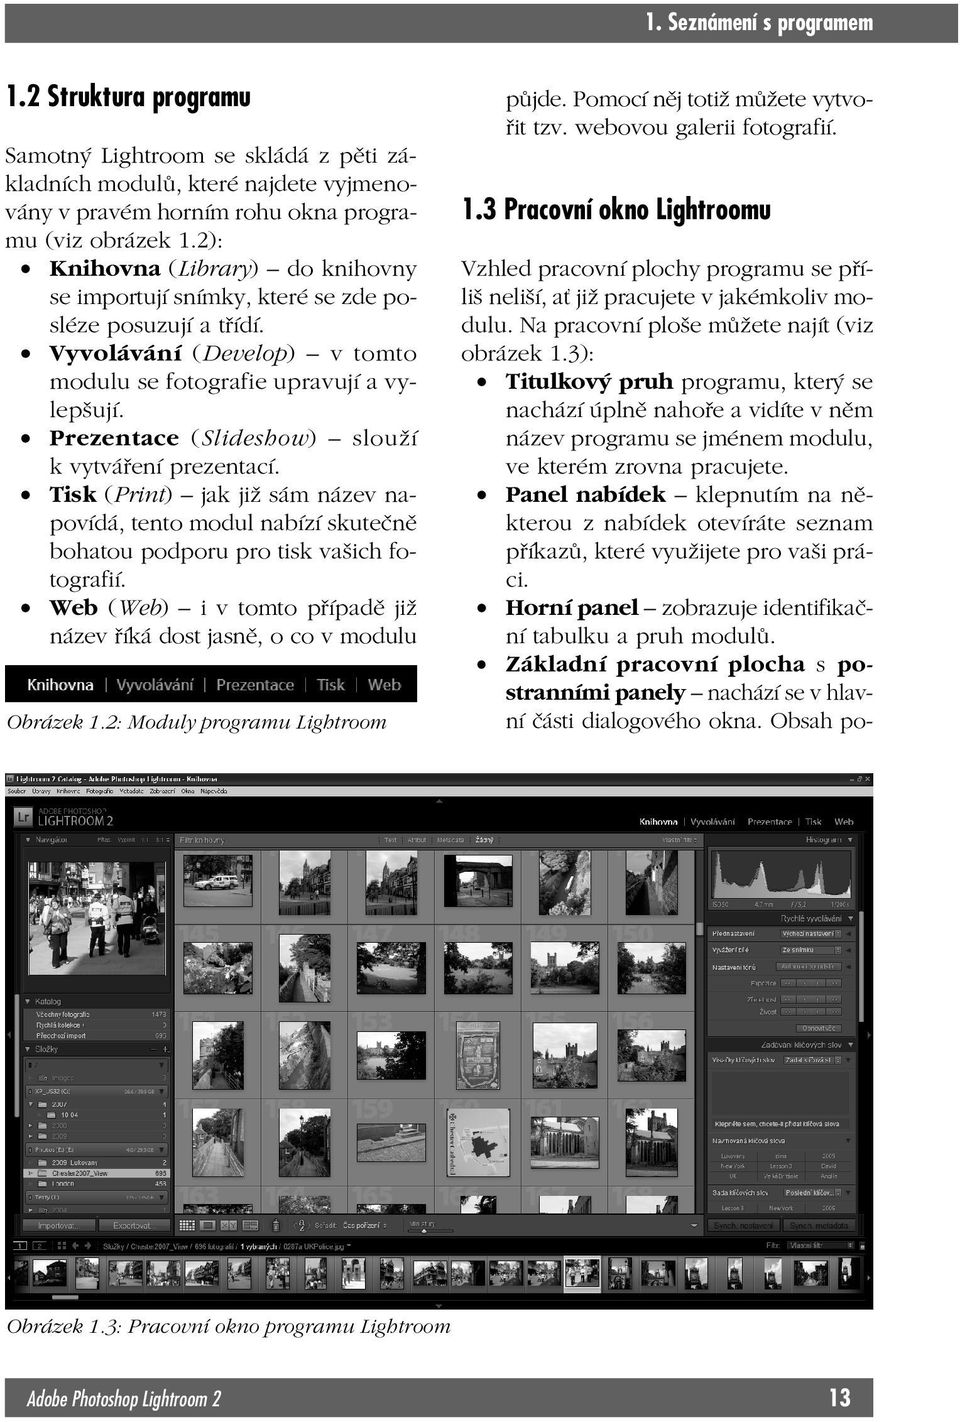 Prezentace (Slideshow) slouží k vytváření prezentací. Tisk (Print) jak již sám název napovídá, tento modul nabízí skutečně bohatou podporu pro tisk vašich fotografií.